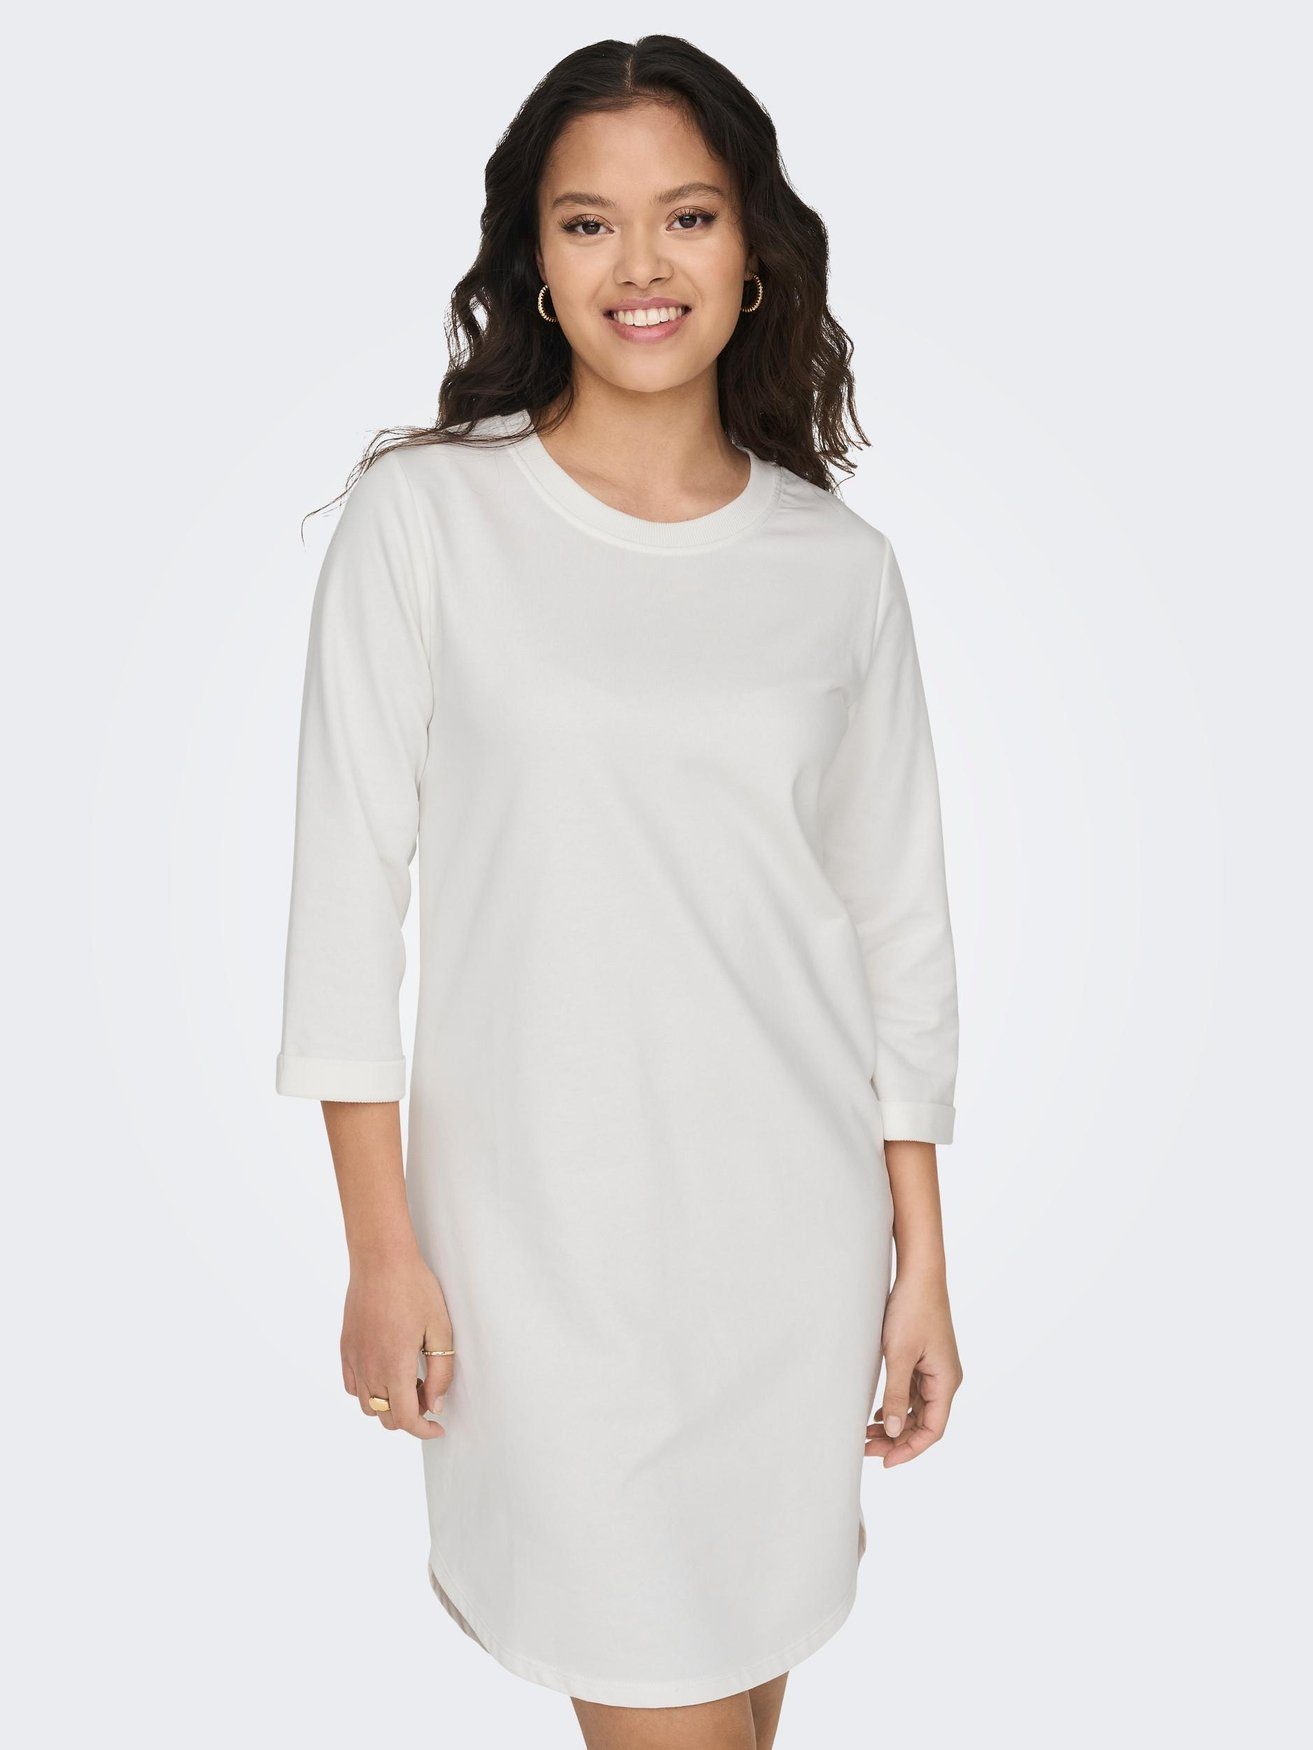 JACQUELINE de Rundhals in YONG Kleid 3/4 Arm (knielang) Weiß-3 Shirtkleid Sweat JDYIVY 5608